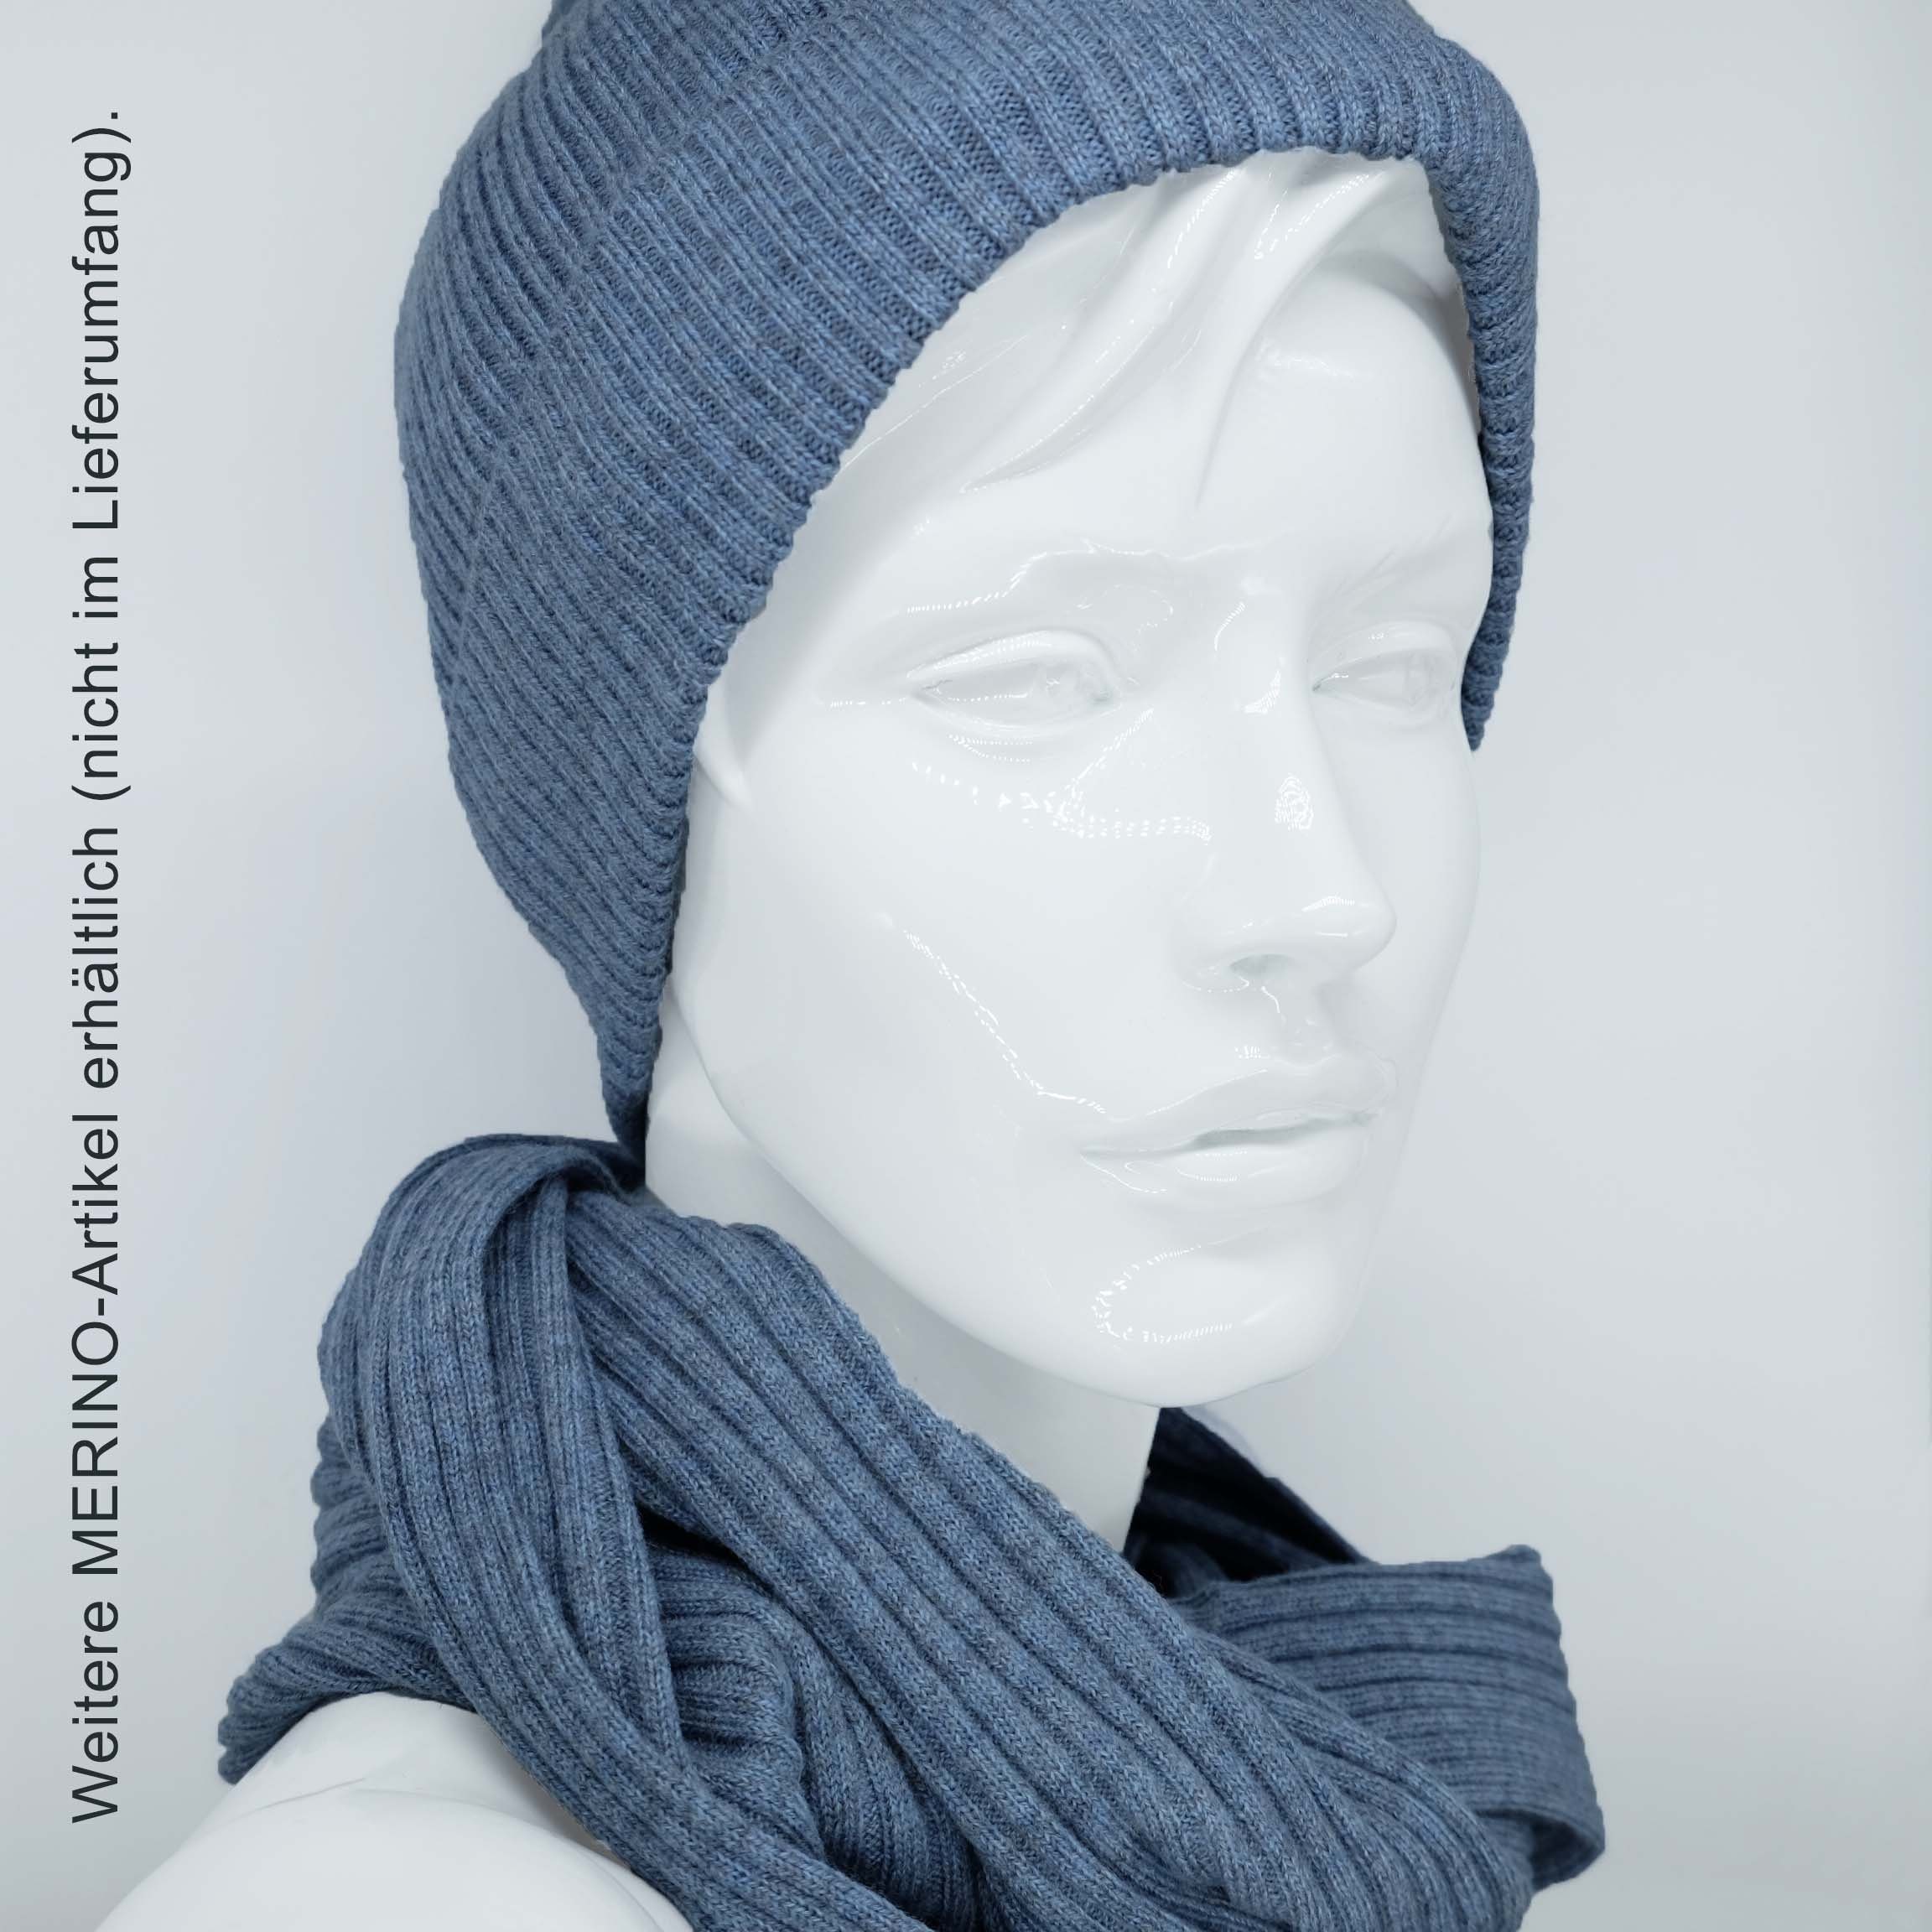 BEAZZ Stirnband Stirnband Ohrenwärmer Damen WOLLE blaugrau 100% weich Merino Feinstrick, Winter meliert und warm